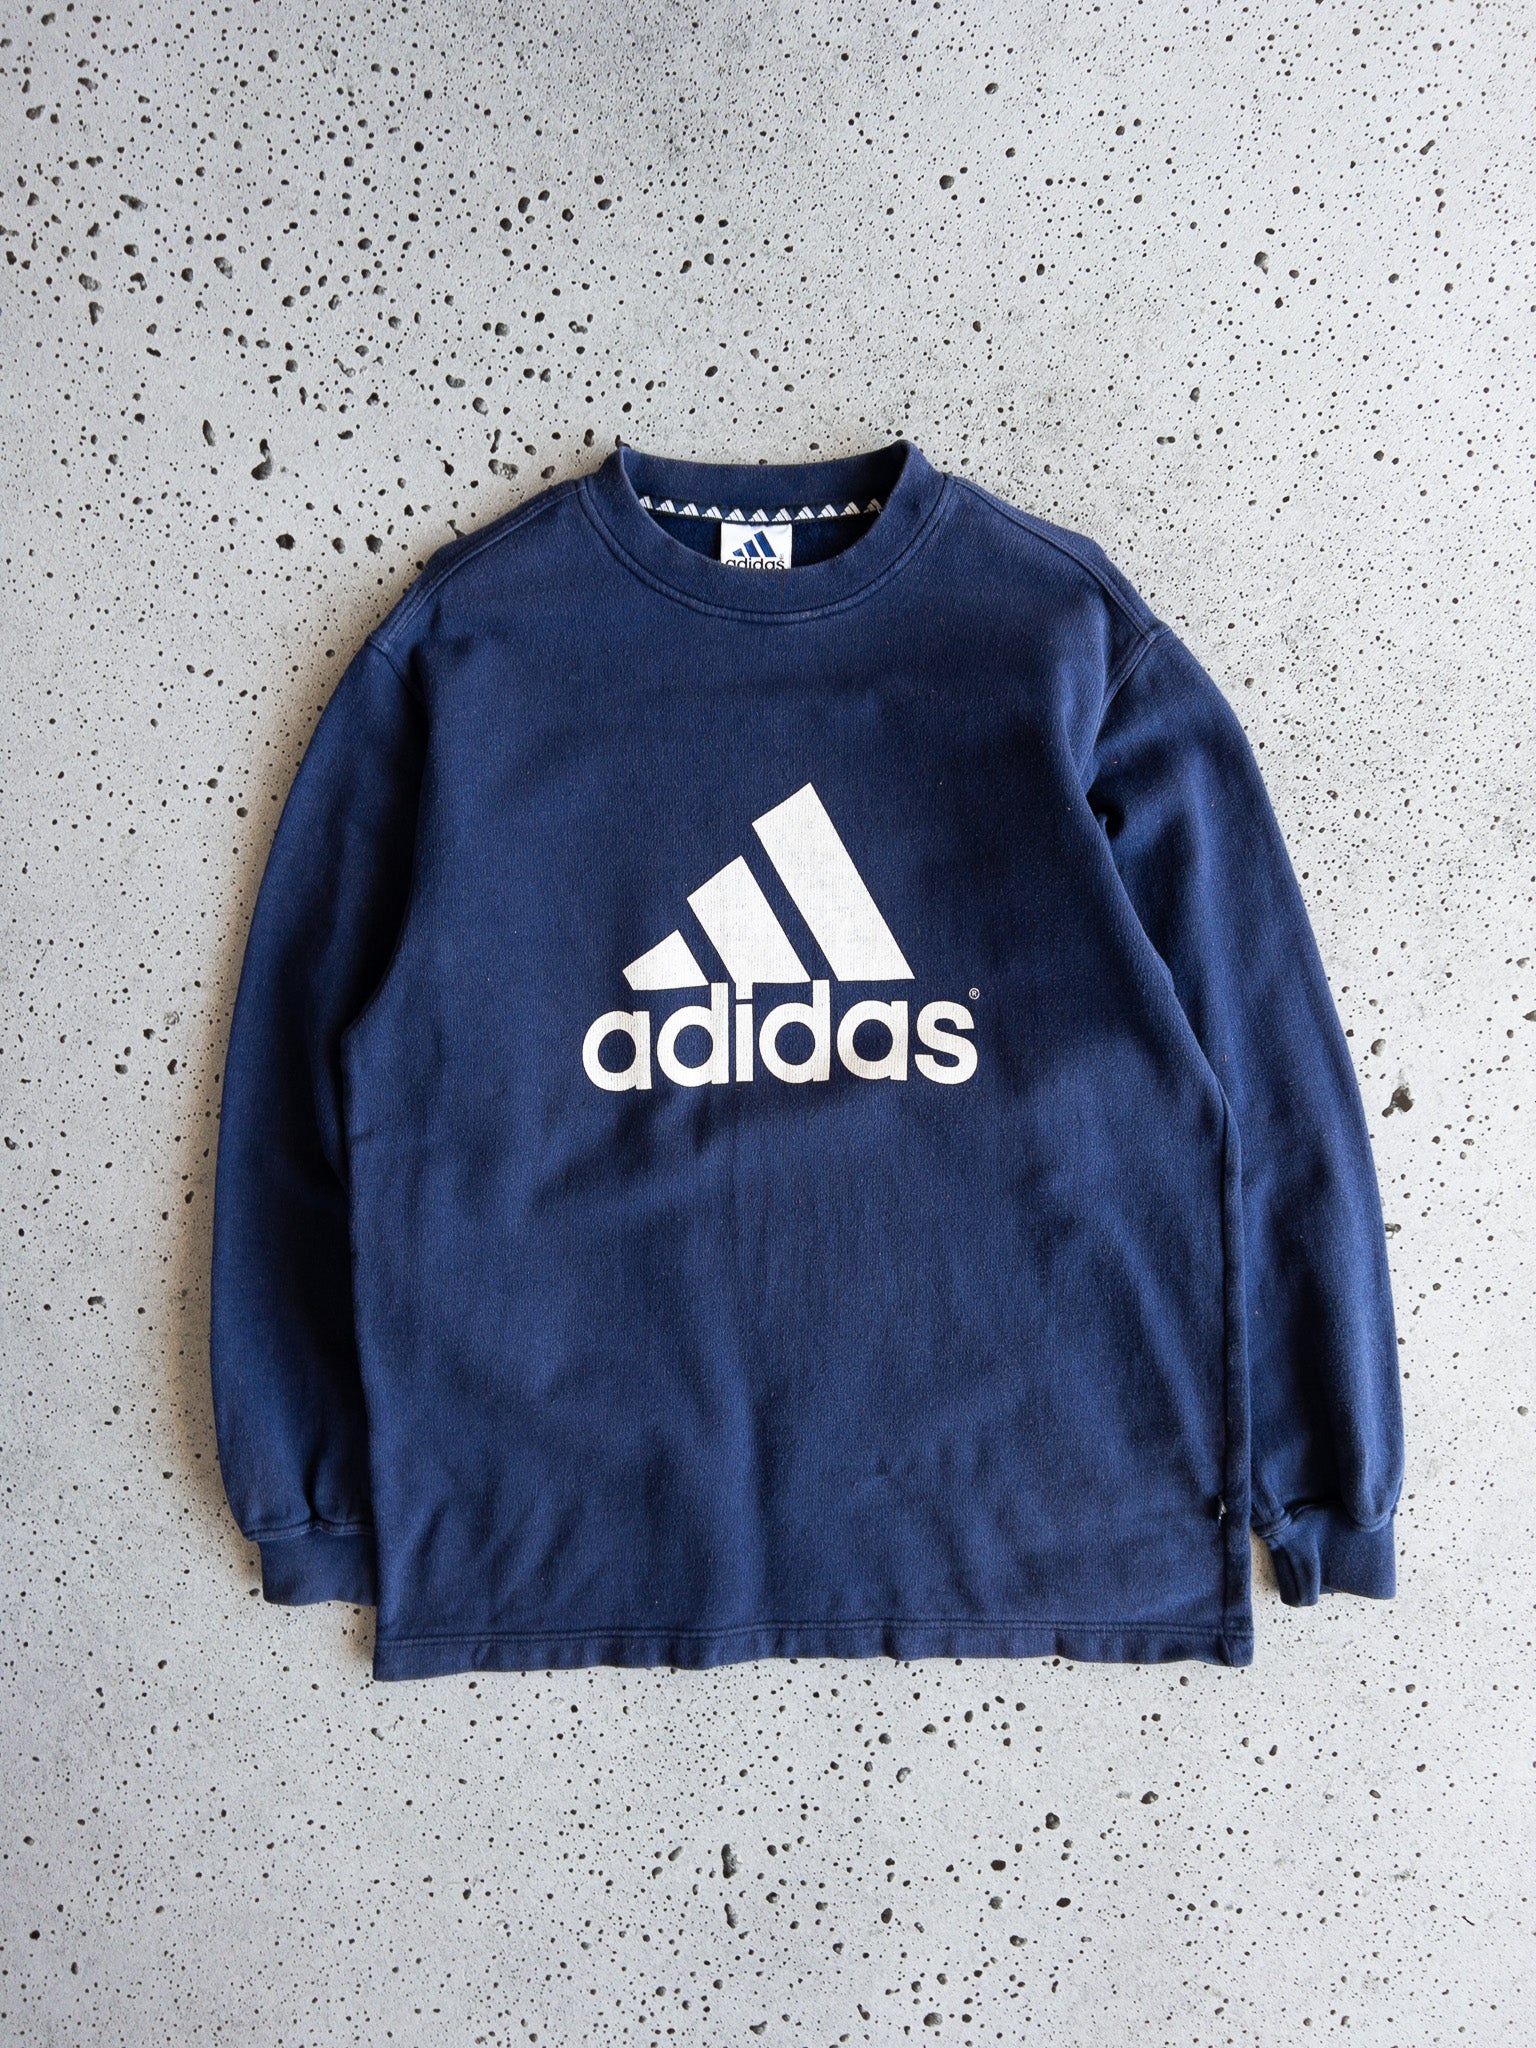 Vintage Adidas Sweatshirt (L)